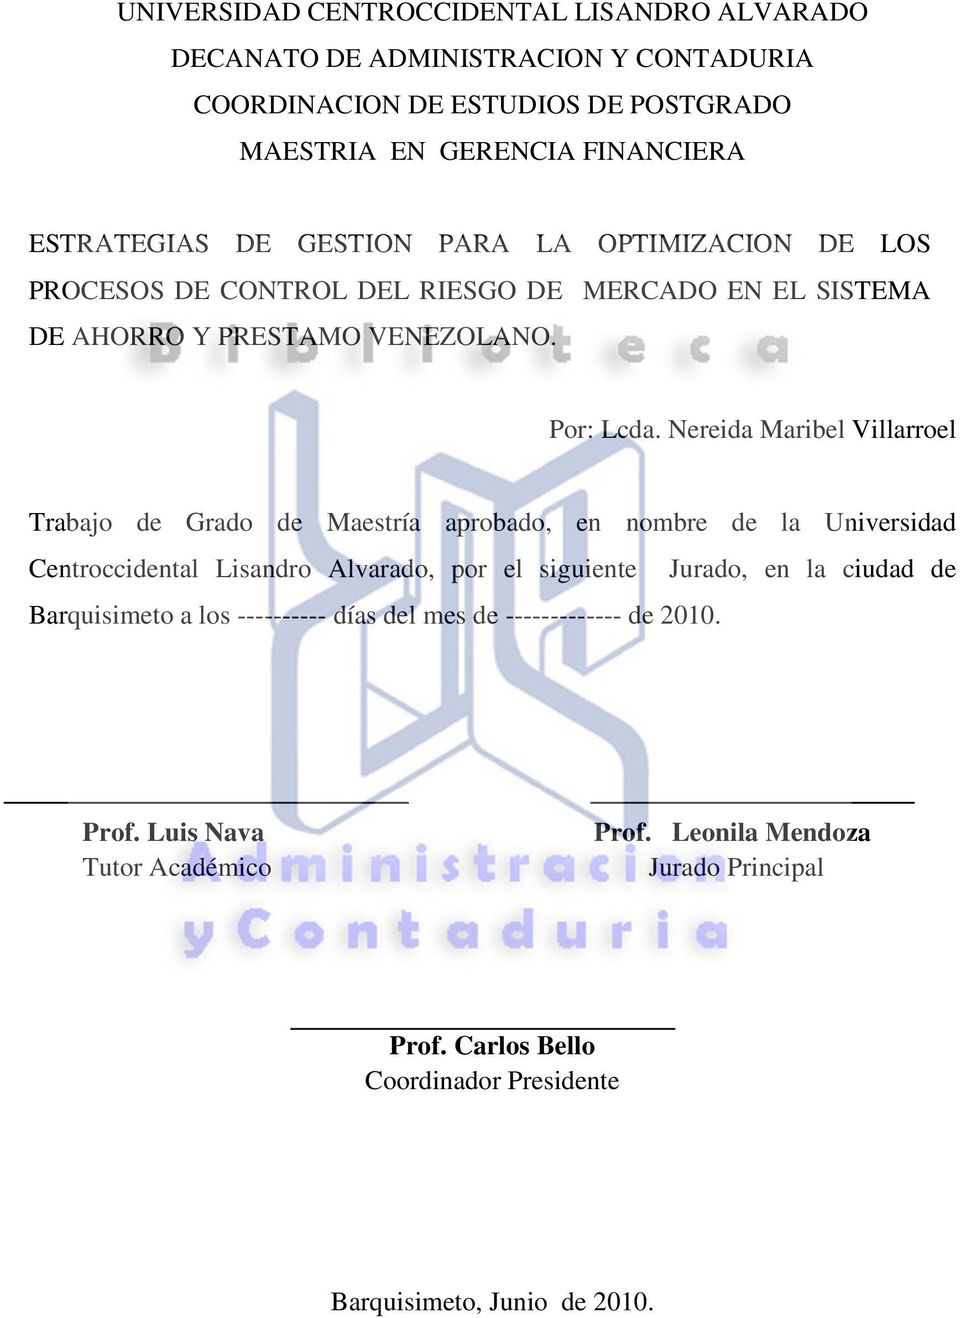 Nereida Maribel Villarroel Trabajo de Grado de Maestría aprobado, en nombre de la Universidad Centroccidental Lisandro Alvarado, por el siguiente Jurado, en la ciudad de